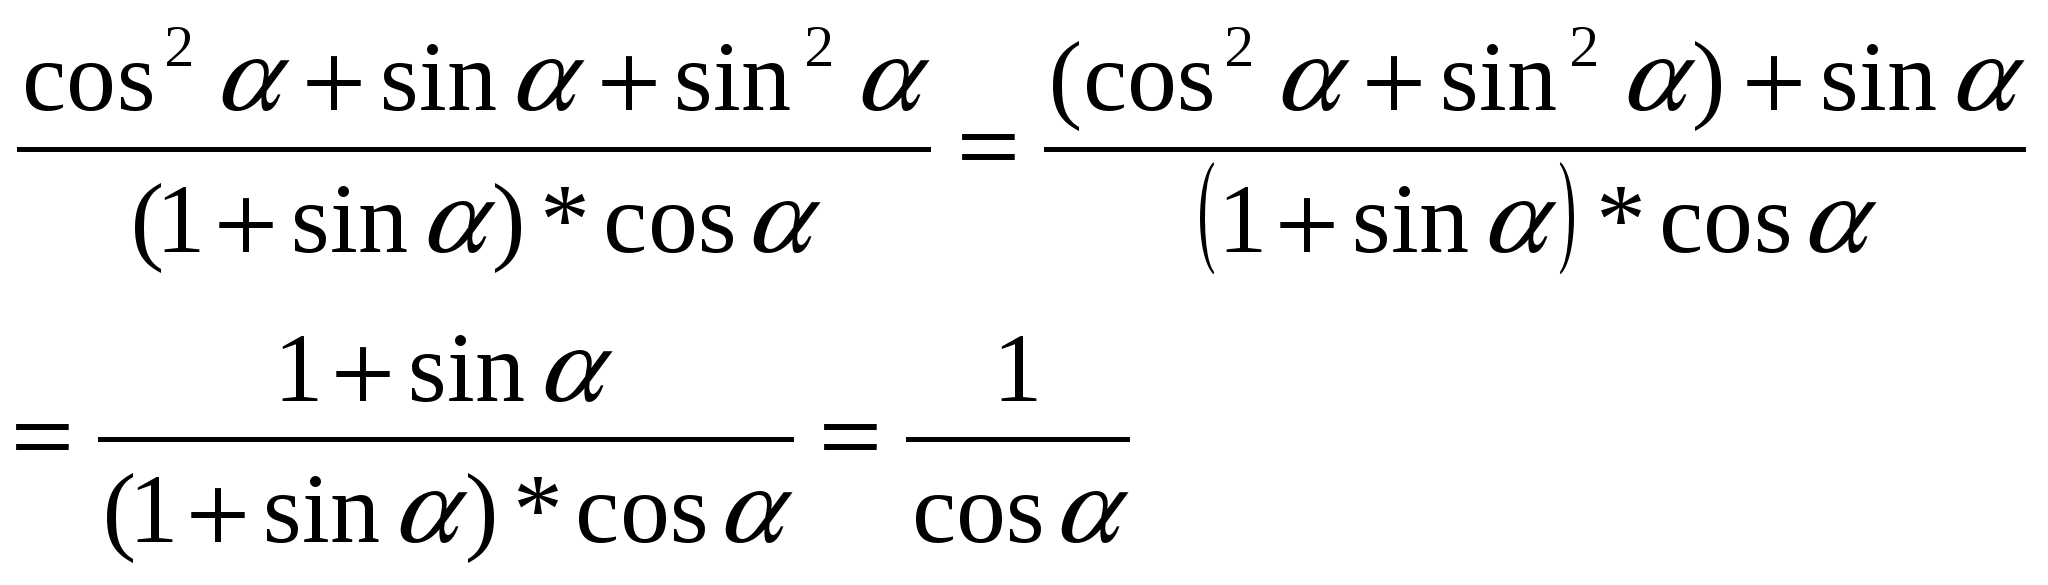 Өрнектерді түрлендіруде негізгі тригонометриялық тепе-теңдіктерді қолдану(9 cынып)